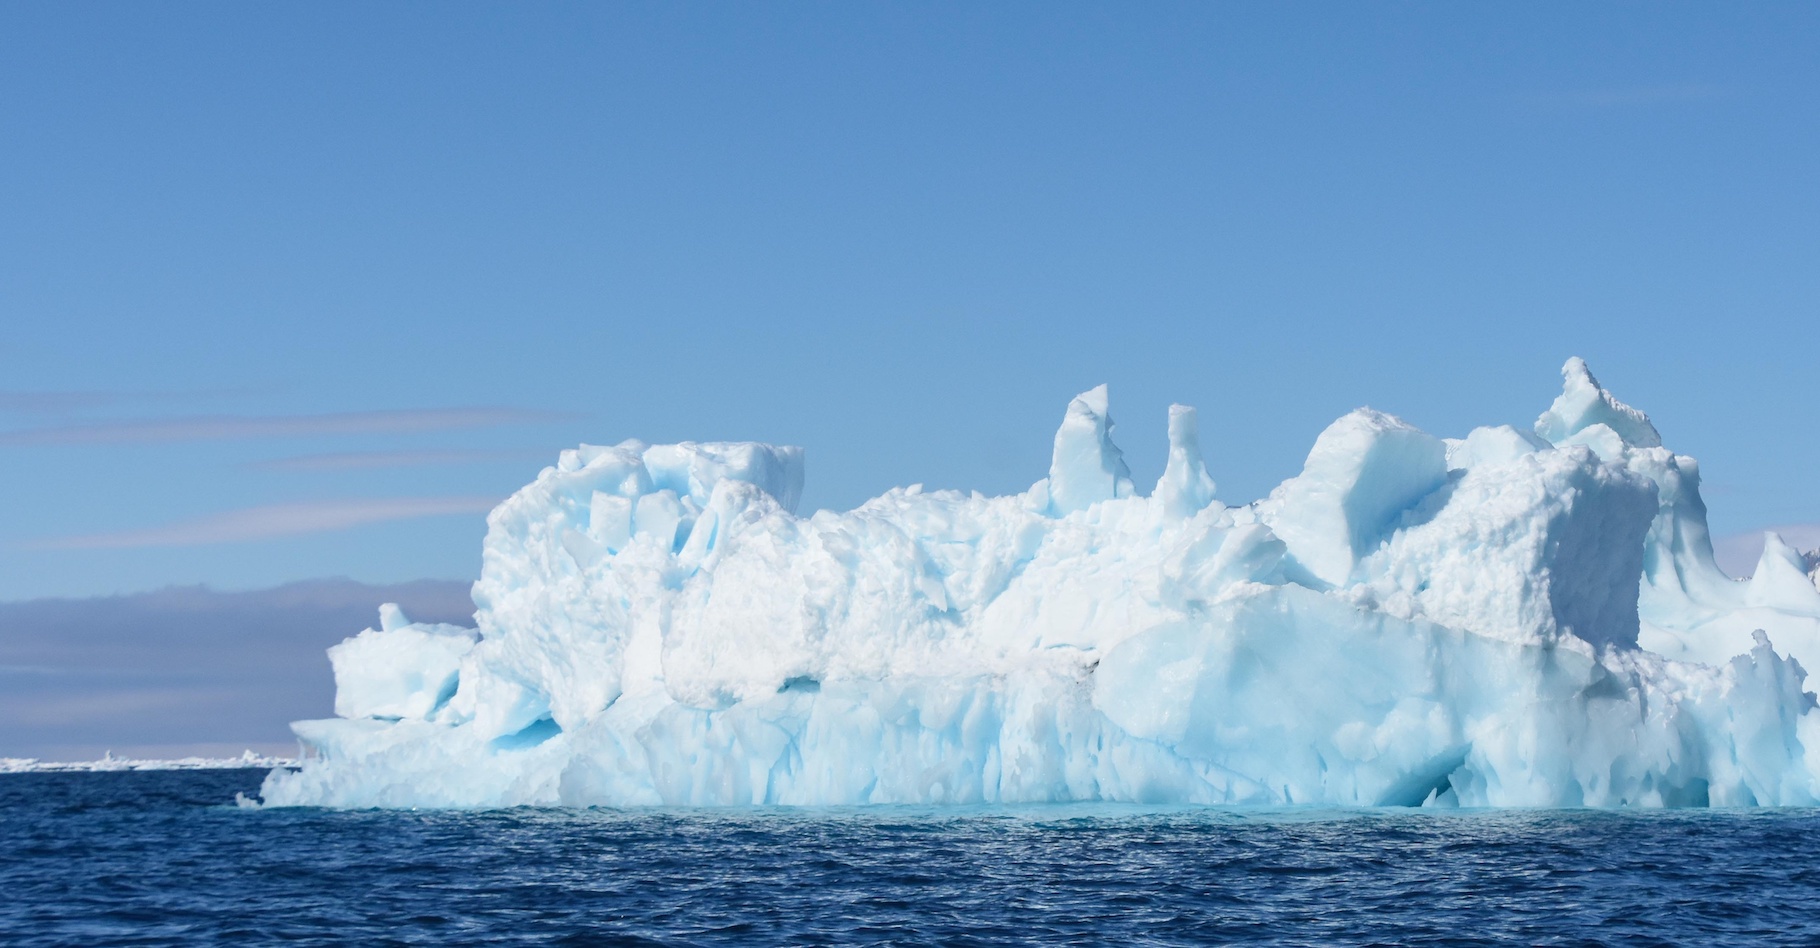 Le bloc de glace s'est effondré lors d'une journée marquée par des températures anormalement élevées en Antarctique.&nbsp;© Stéphane, Adobe Stock